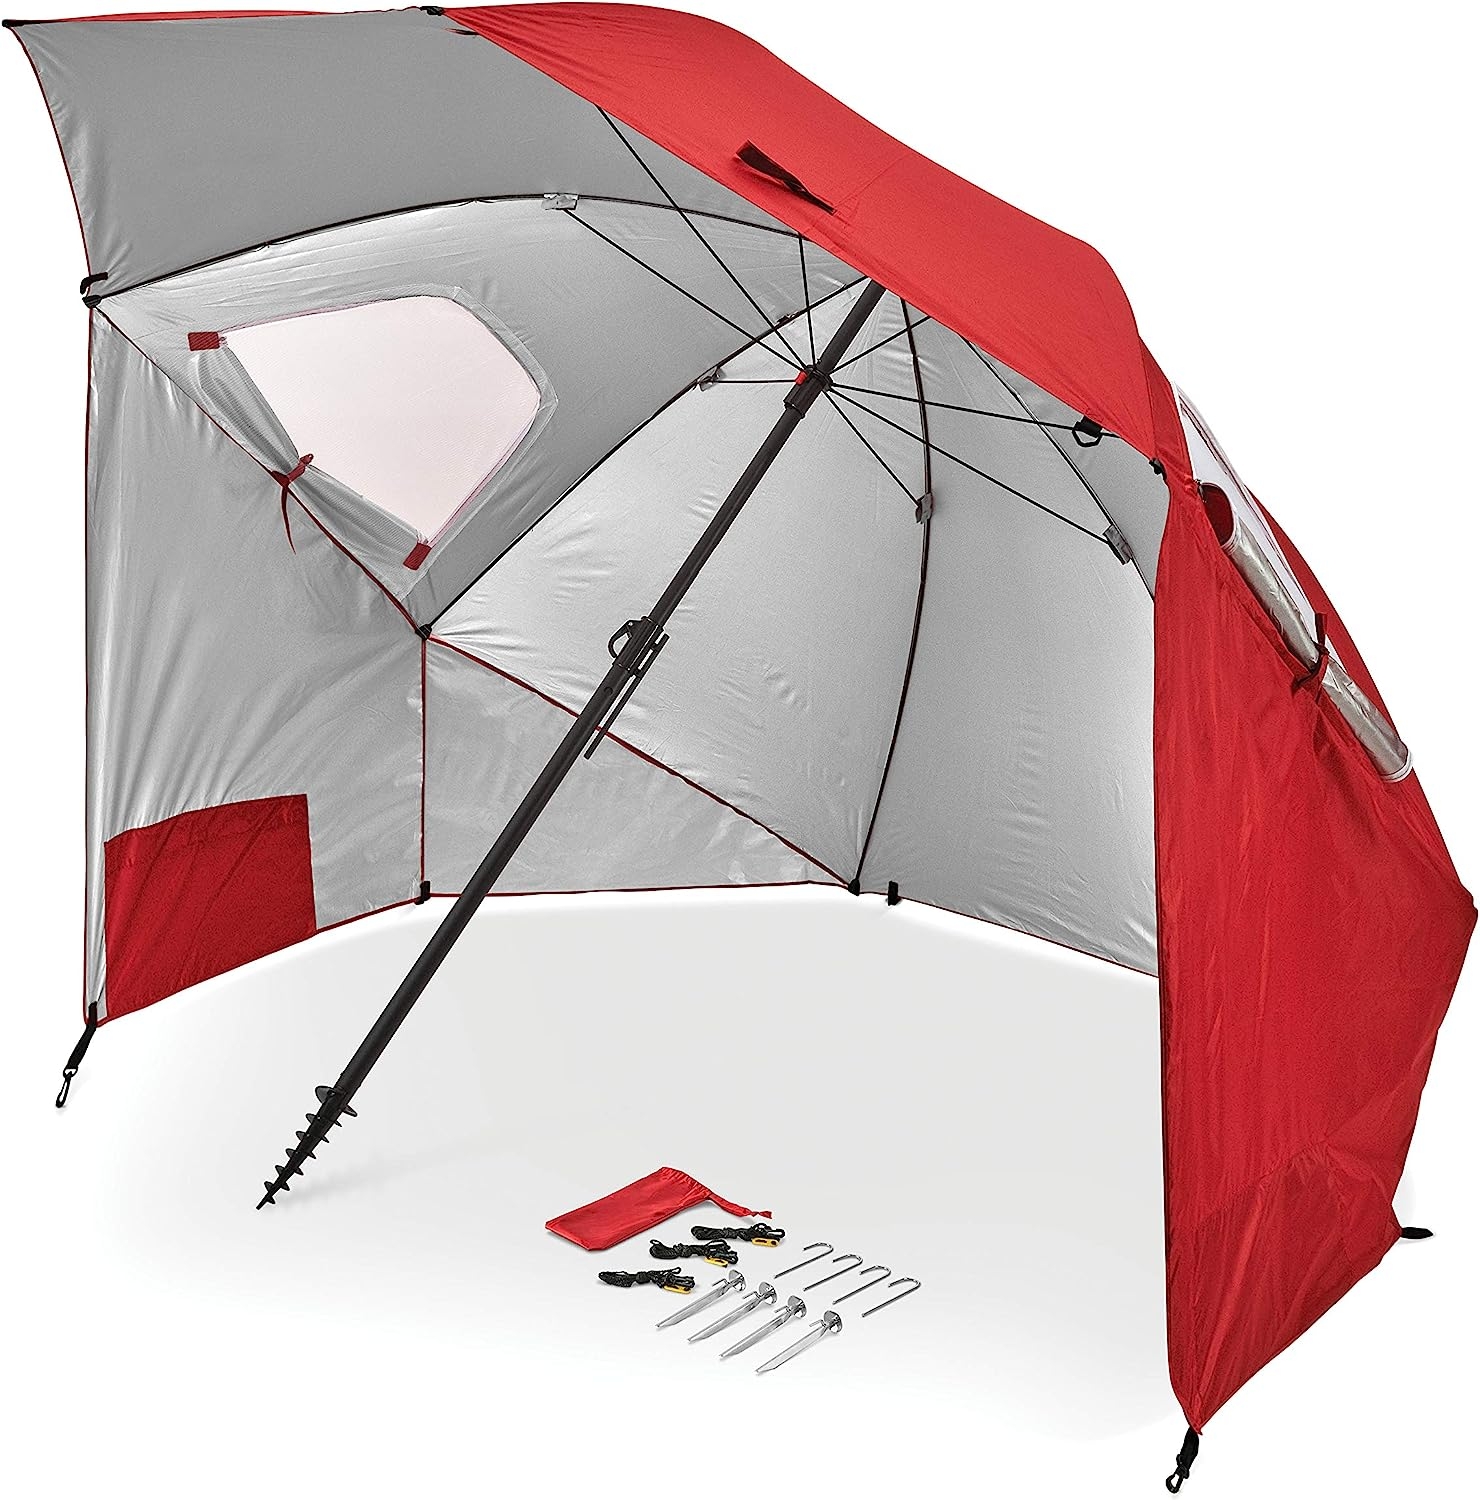 Sport-Brella Premiere XL UPF 50+ Umbrella Shelter for Sun and Rain Protection (9-Foot)   price checker   price checker